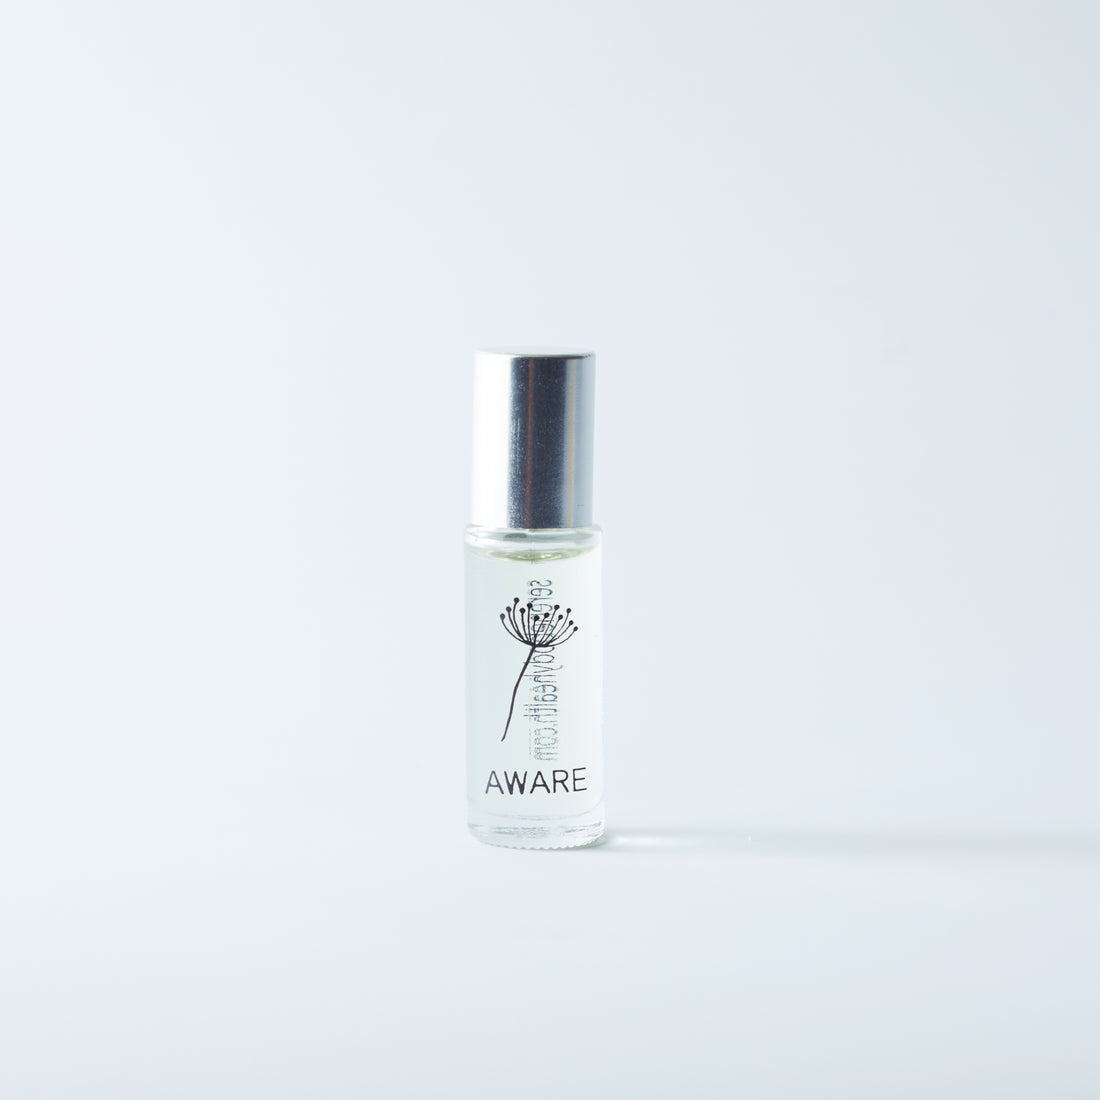 Natural perfume Serene Aware in 2ml sample